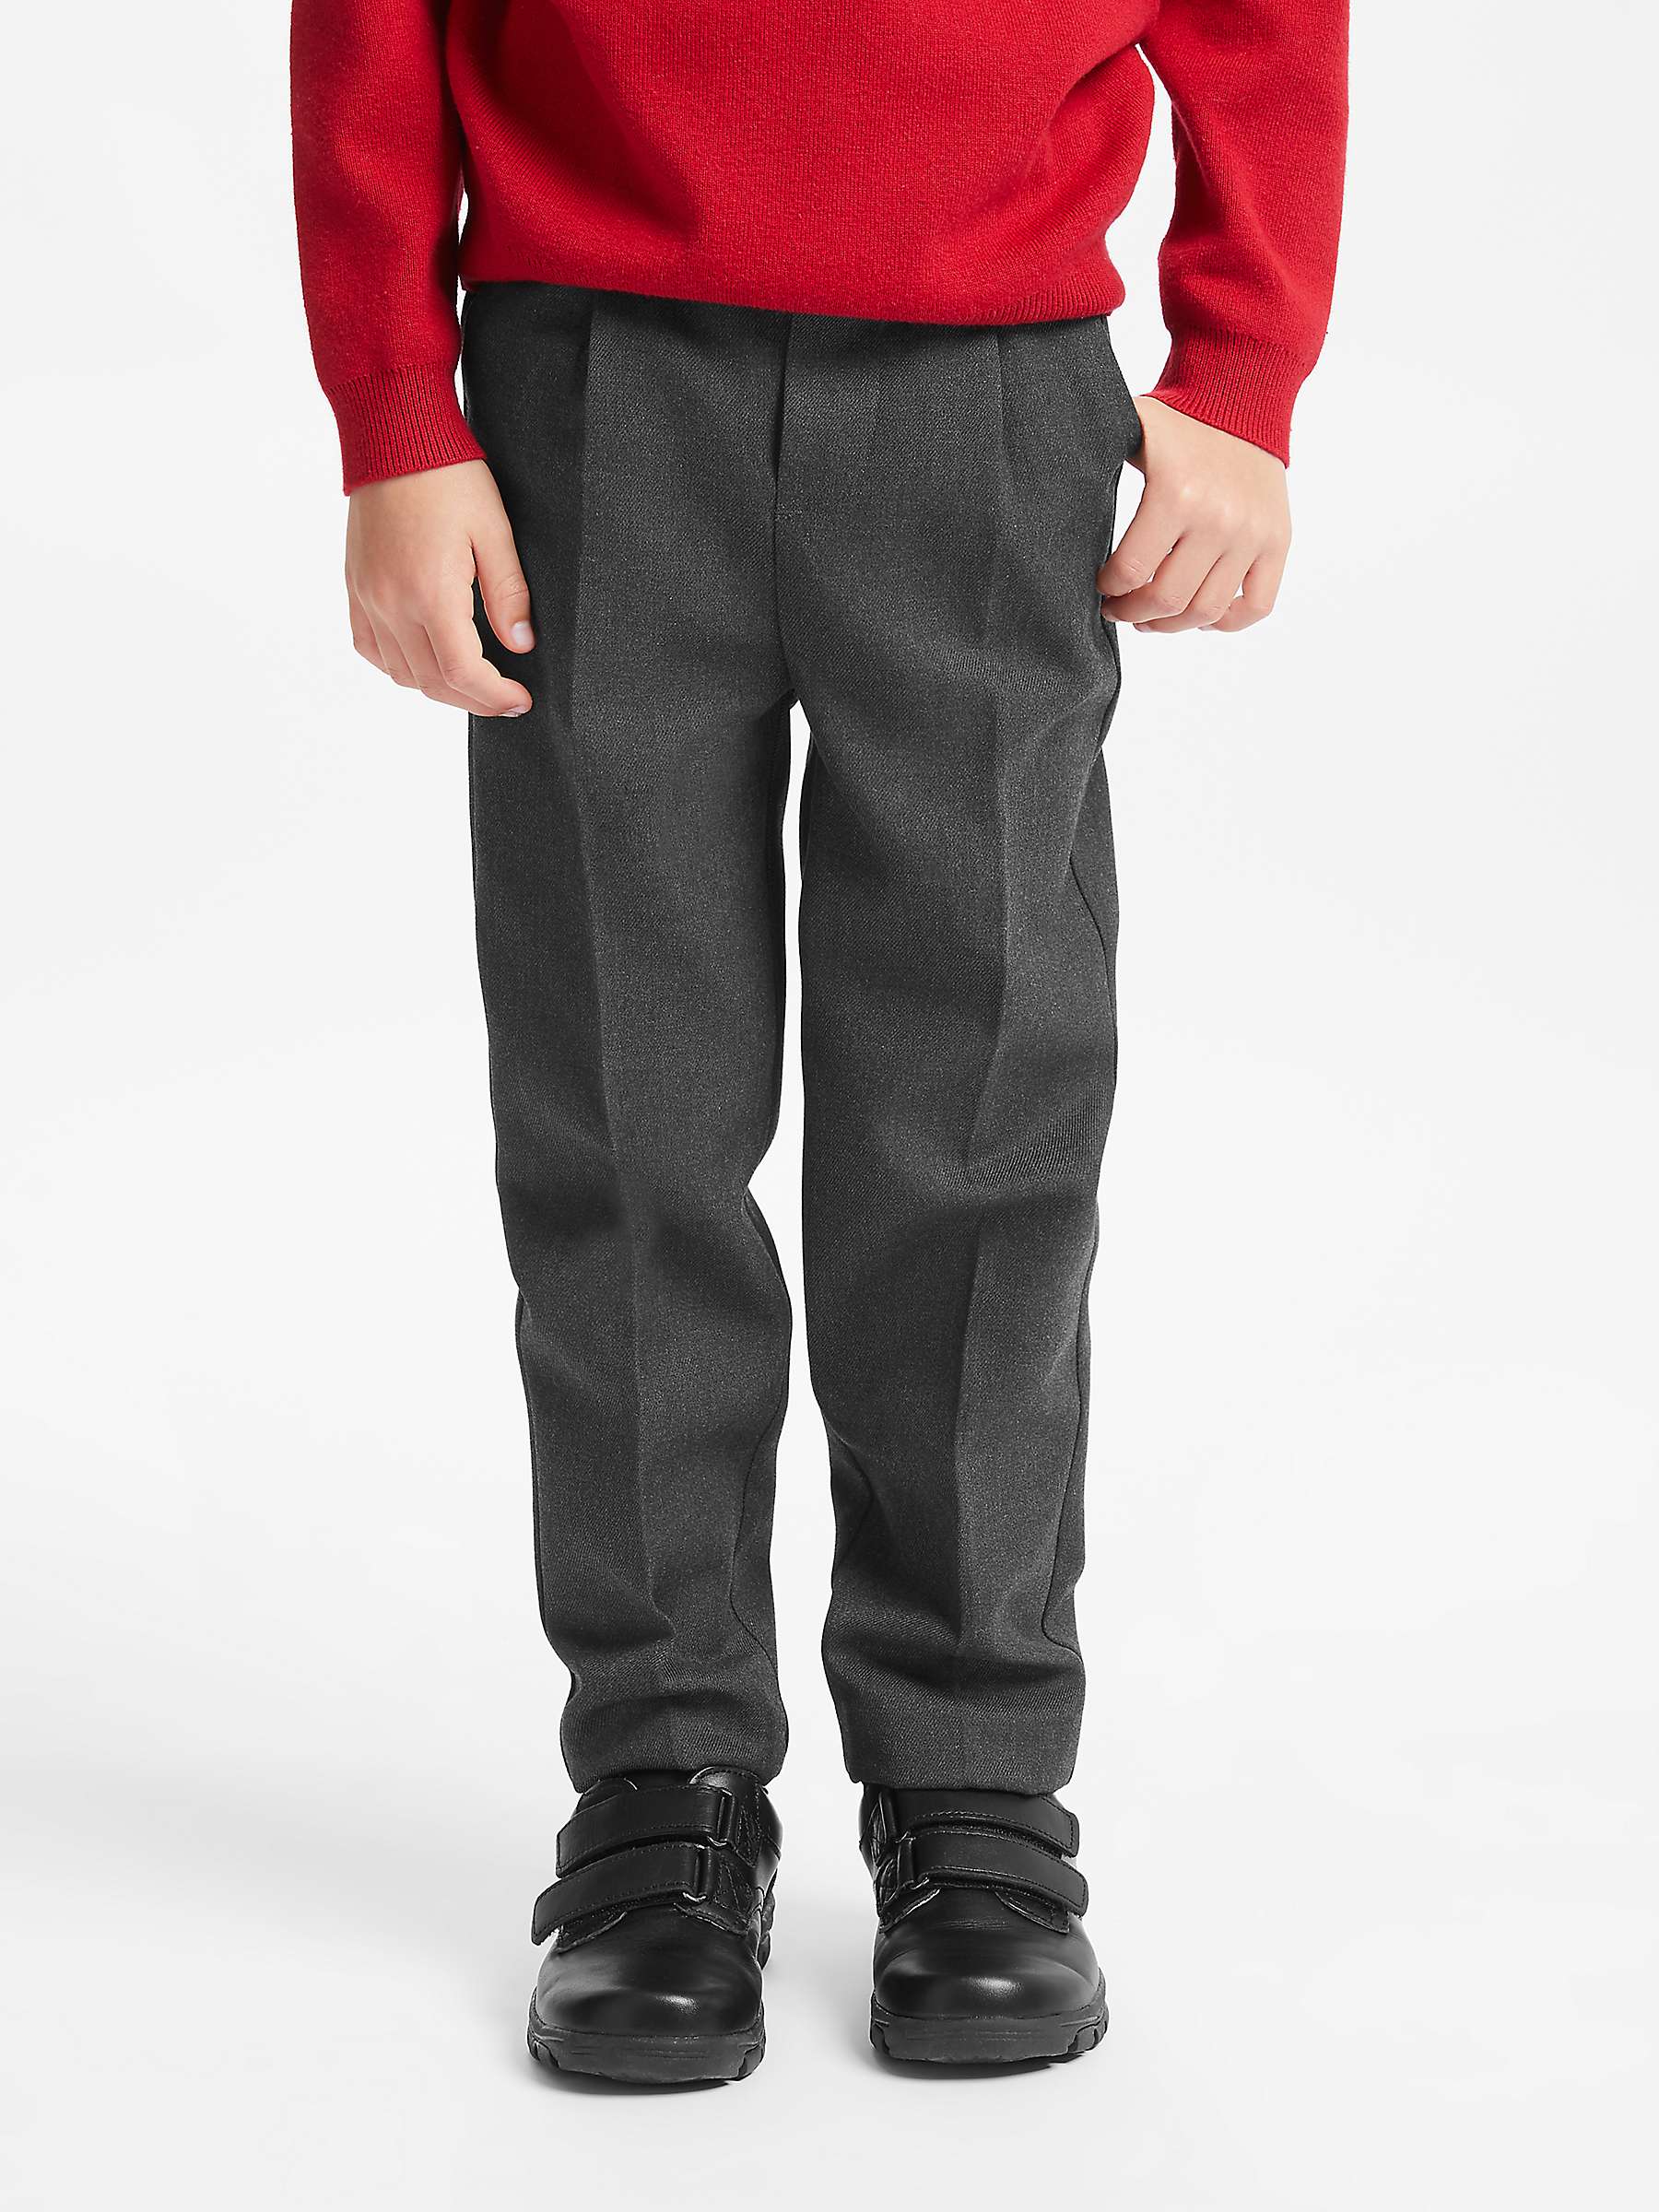 Buy John Lewis Boys' Adjustable Waist Stain Resistant Slim Fit School Trousers Online at johnlewis.com